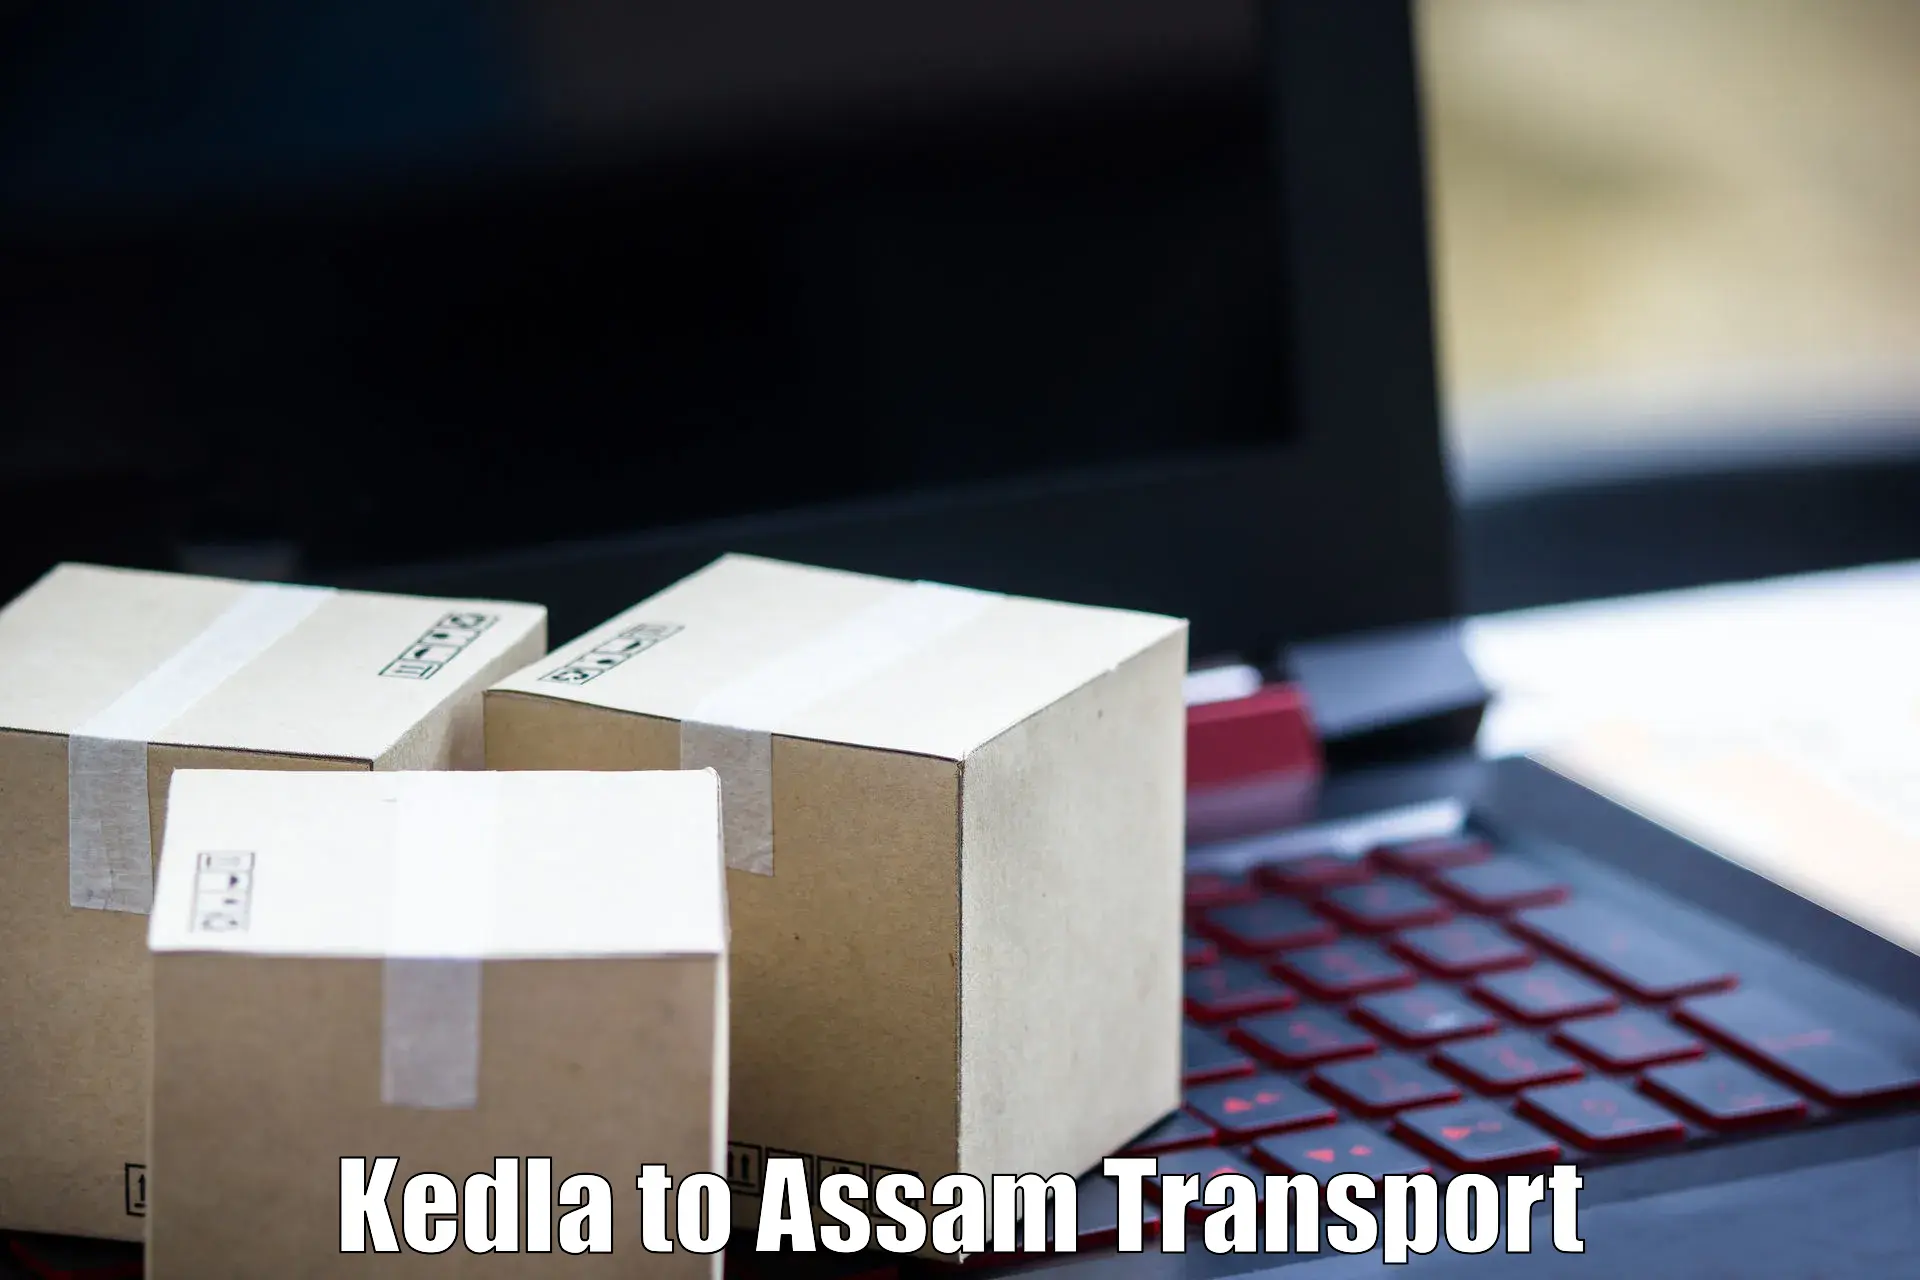 Land transport services Kedla to Assam